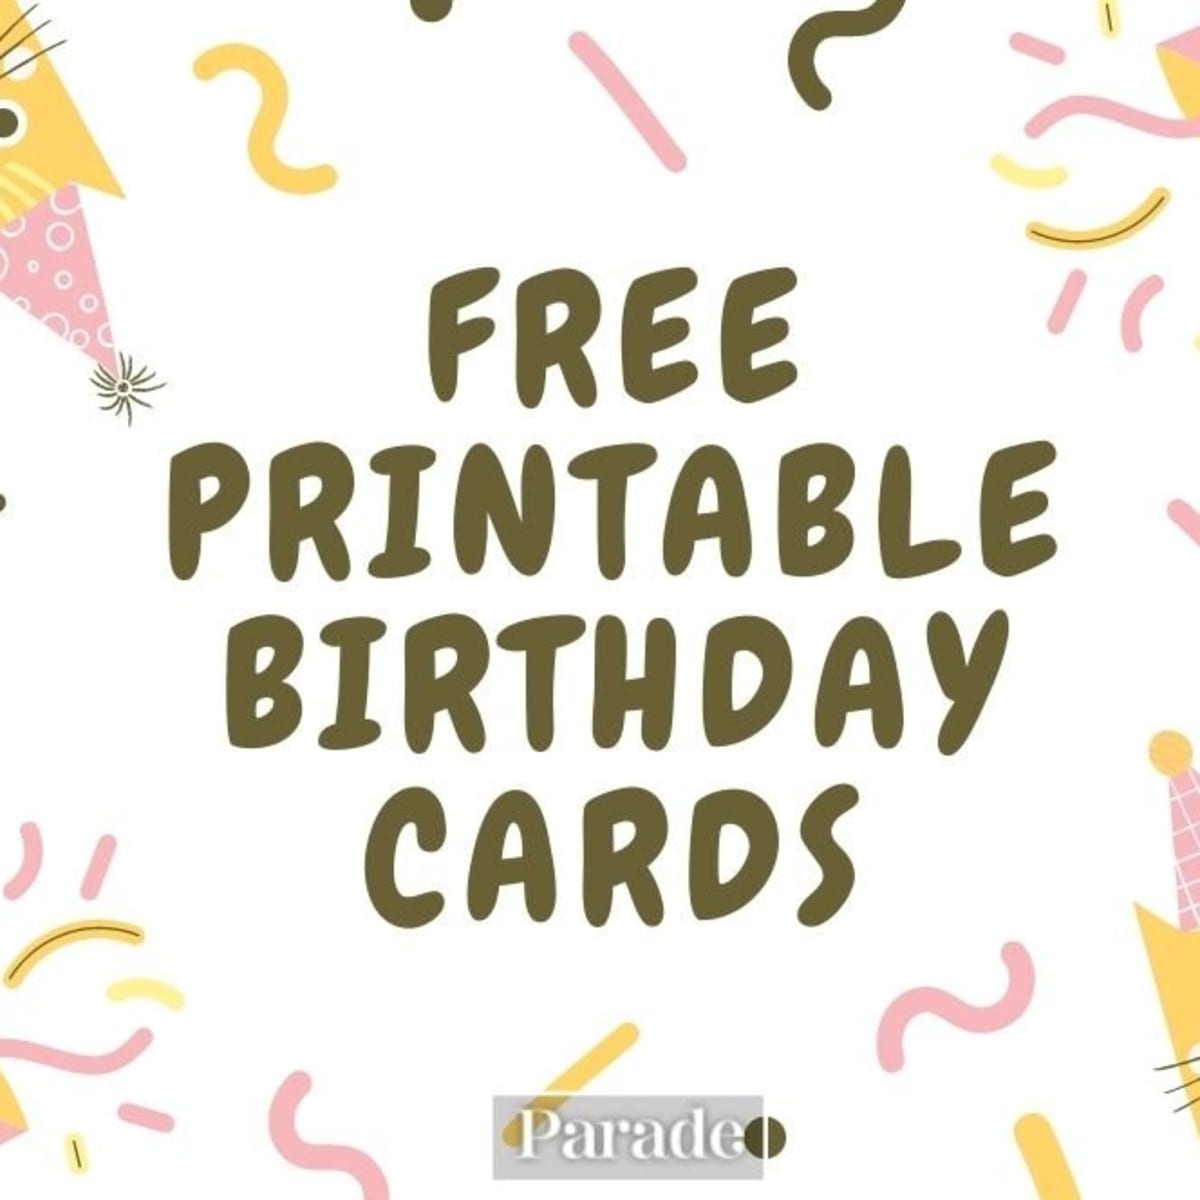 20 Free Printable Birthday Cards Parade - Free Printable Birthday Cards For Her